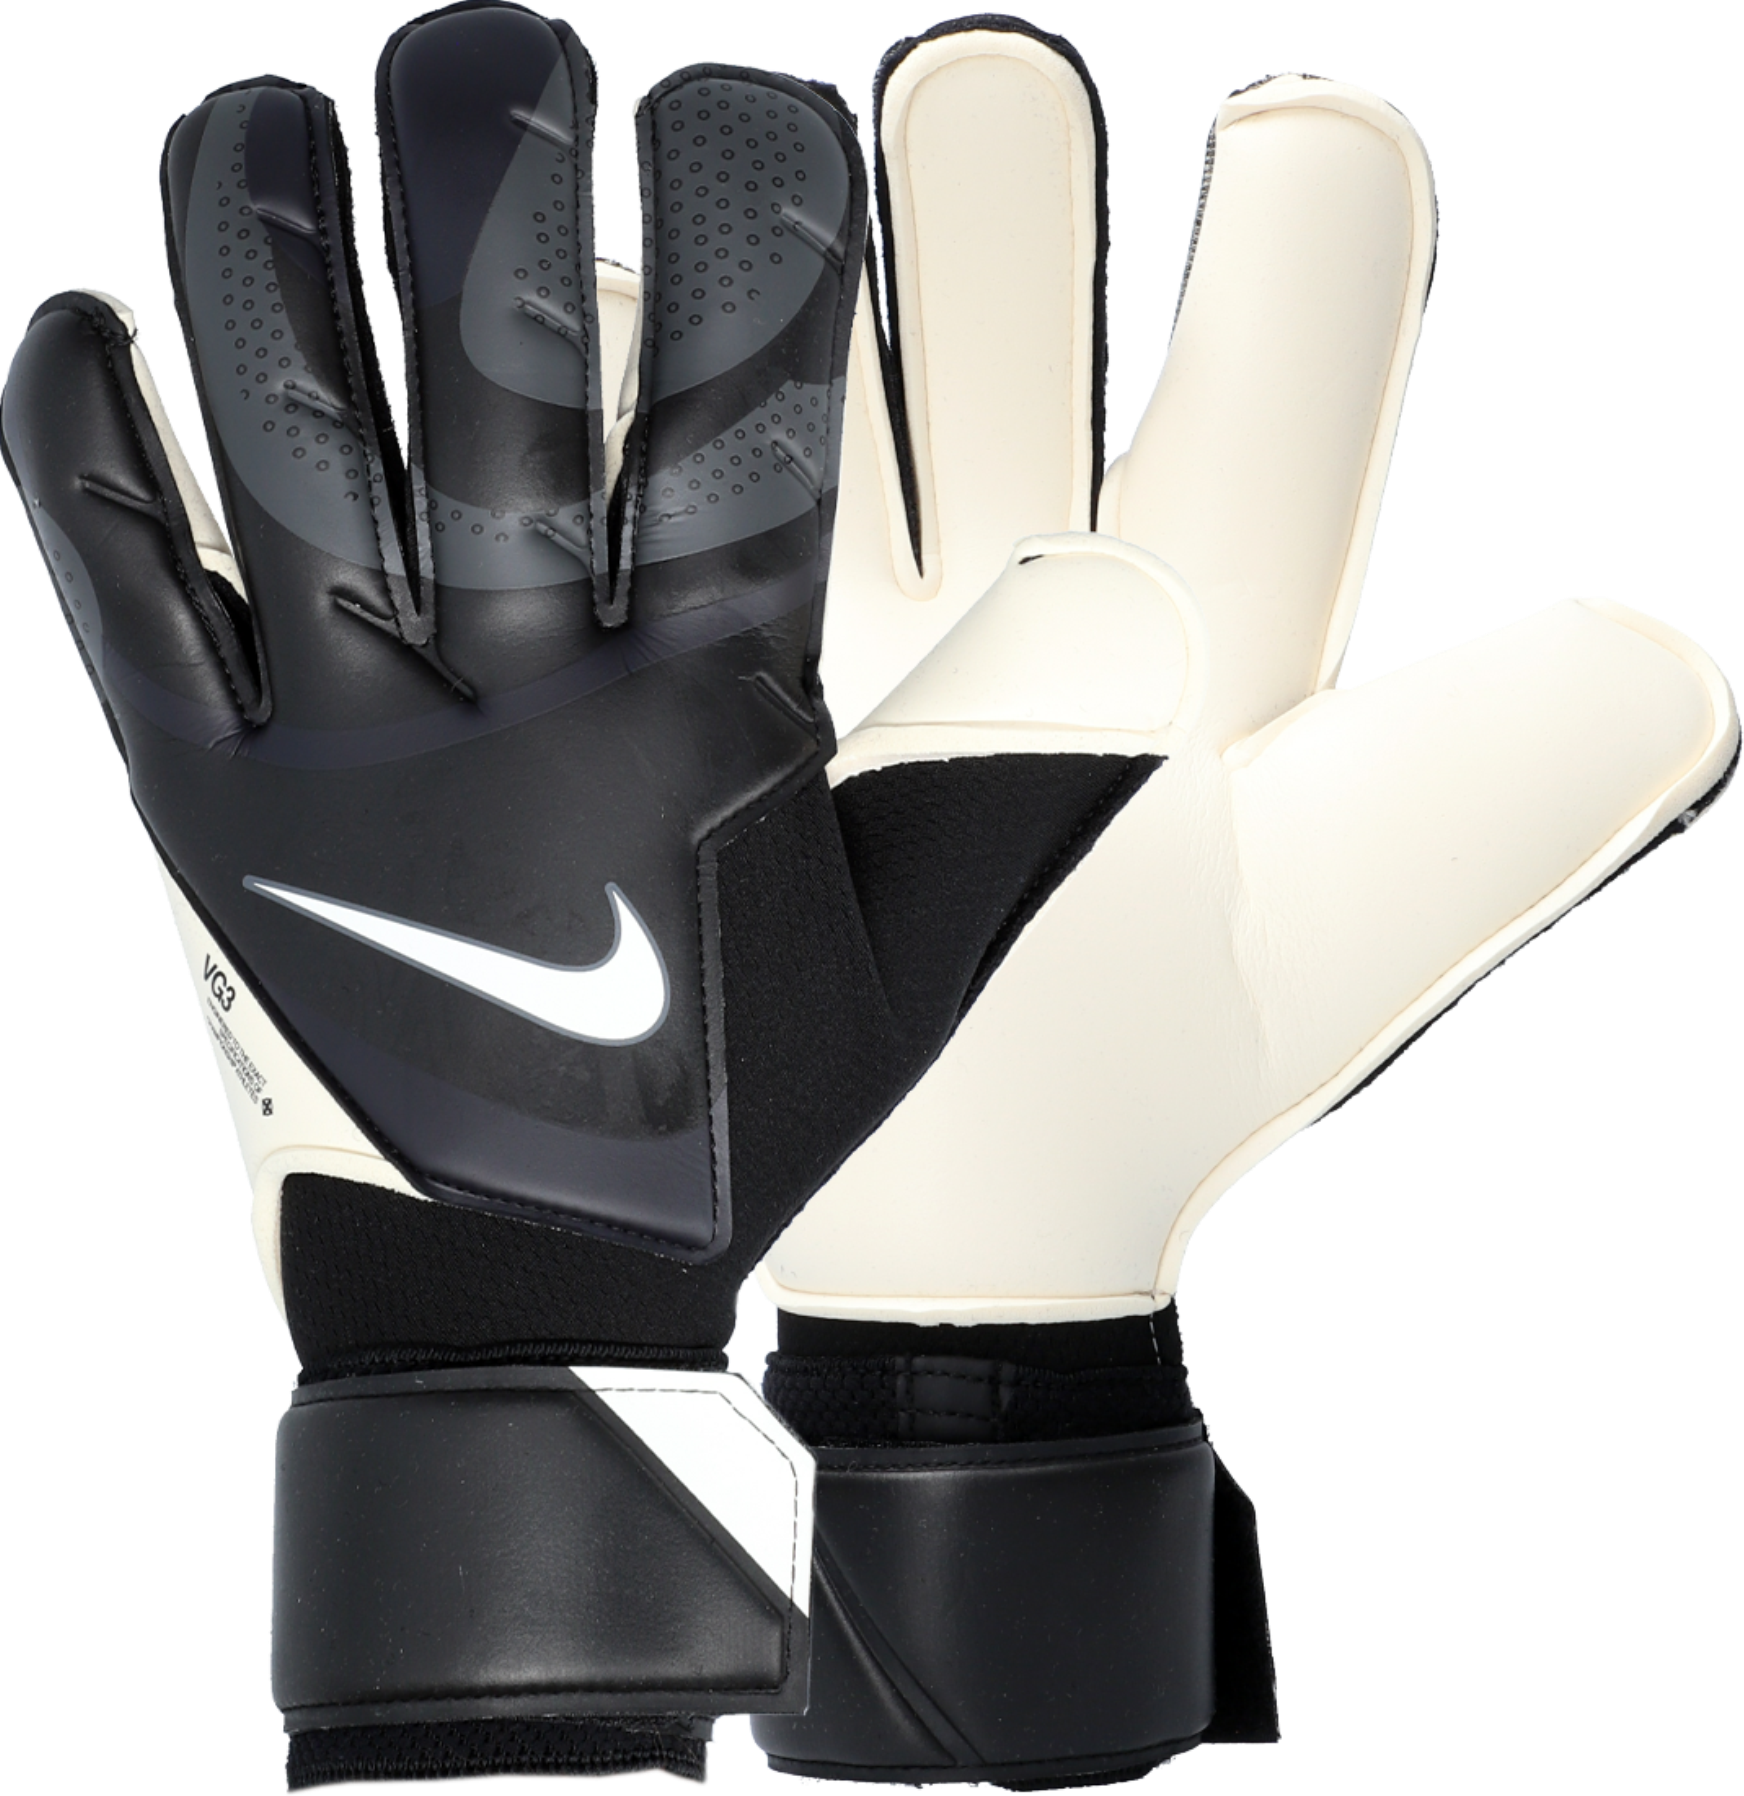 Brankářské rukavice Nike Vapor Grip 3 Promo